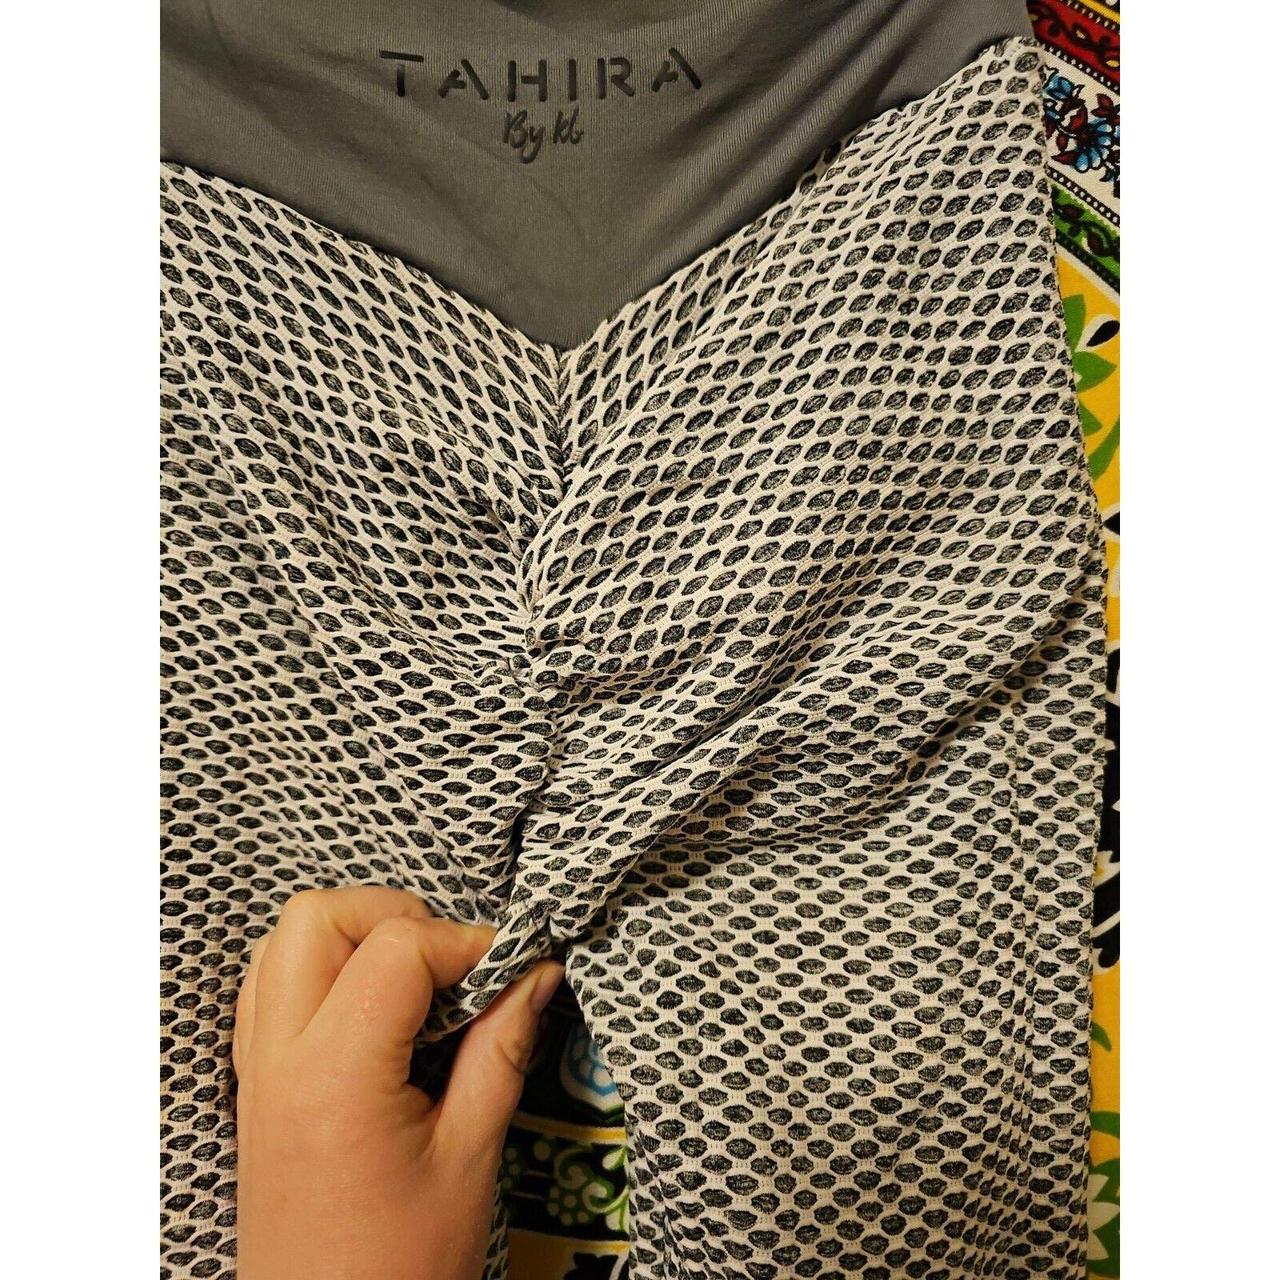 Tahira by KB size small #tahira #leggings - Depop